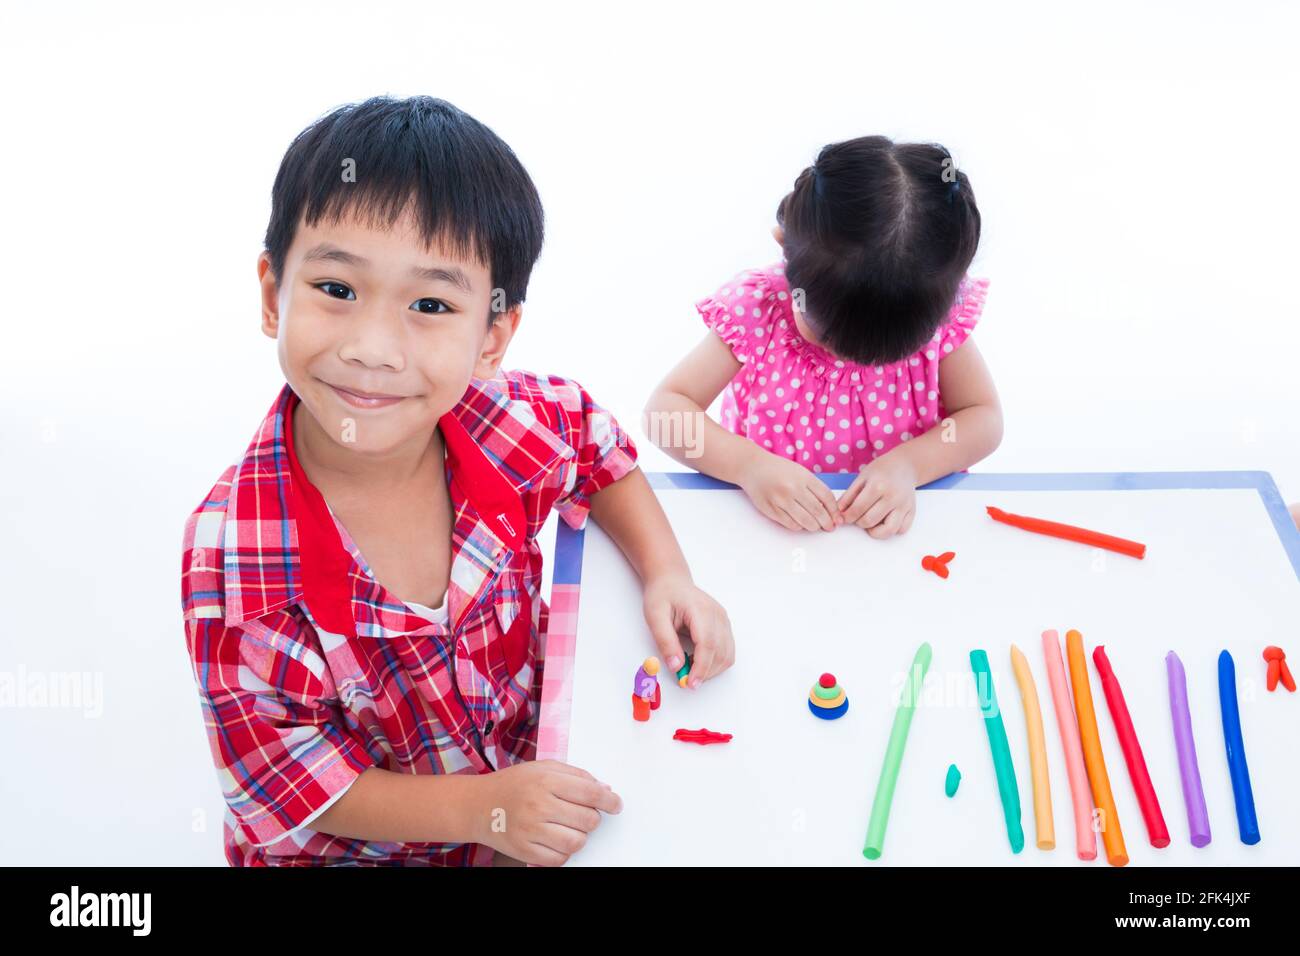 Kleine asiatische Kinder spielen und erstellen Spielzeug aus Spielteig auf dem Tisch. Junge lächelnd und Blick auf die Kamera, auf weißem Hintergrund. Stärken Sie das imagi Stockfoto